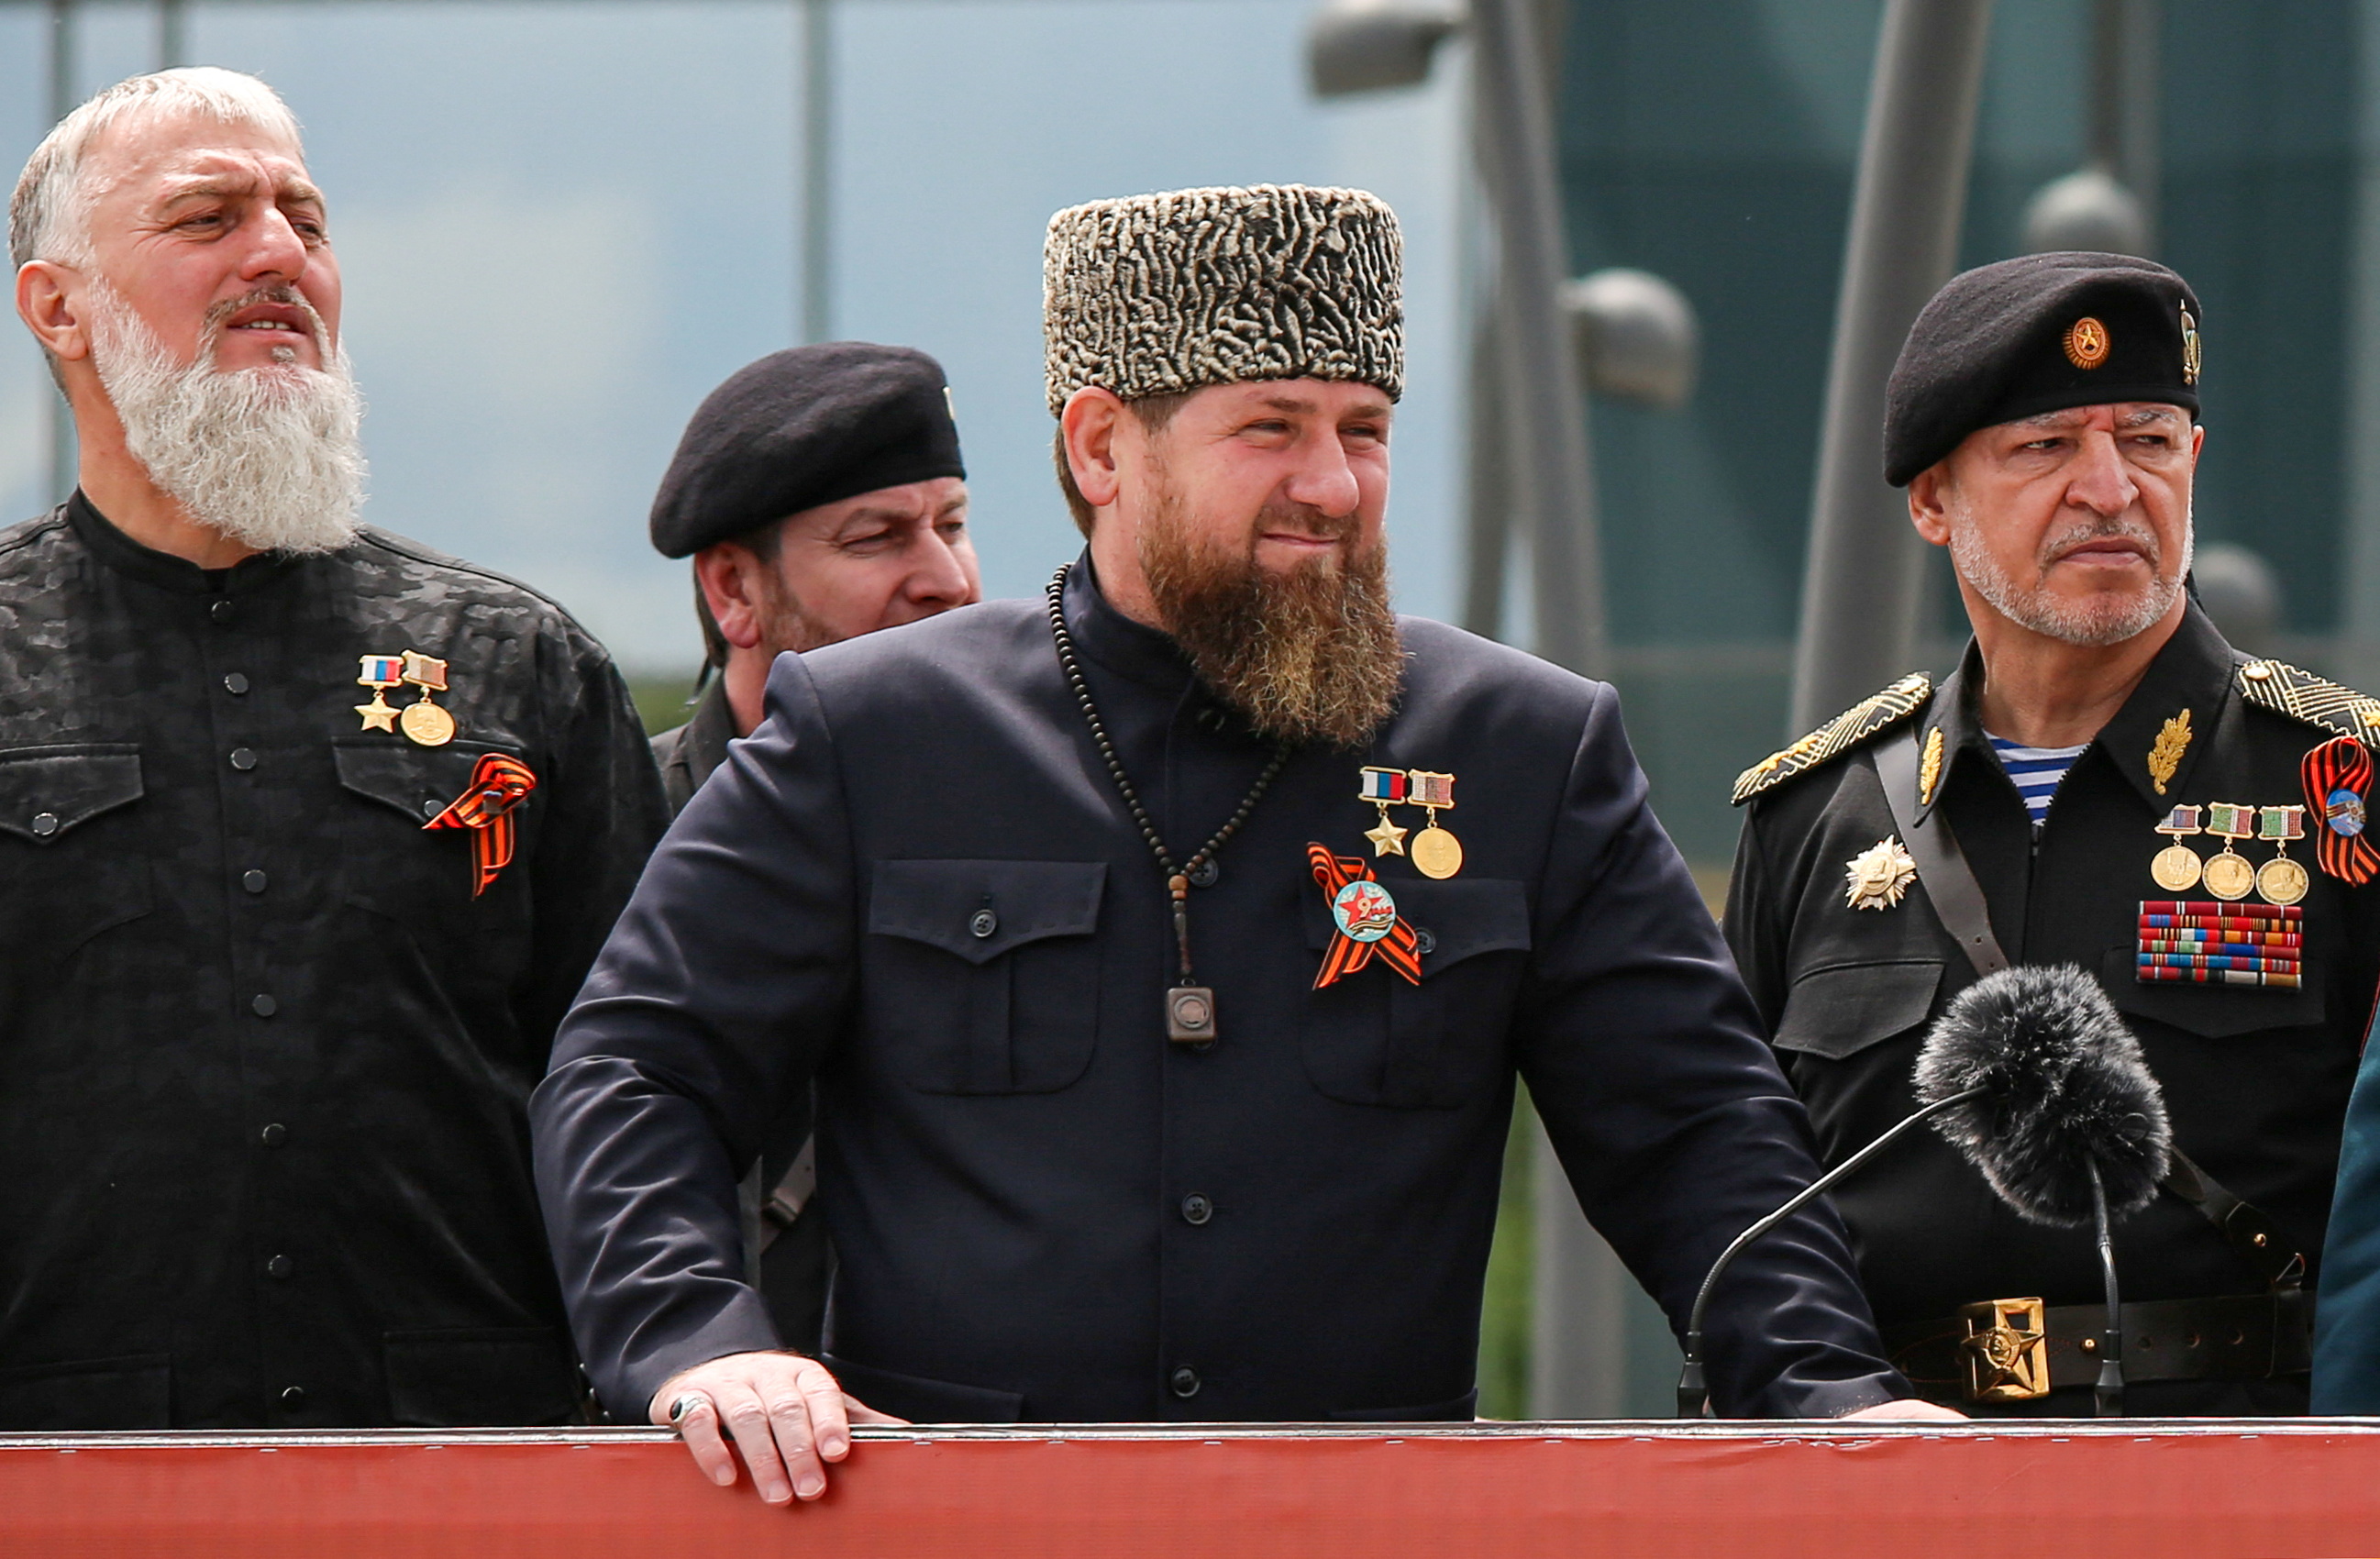 El líder checheno Ramzan Kadyrov, quien con el apoyo de Putin ha  establecido un régimen de terror para las personas LGBT+ en su país, donde cientos de jóvenes gays han sido reportados como desaparecidos. REUTERS/Chingis Kondarov